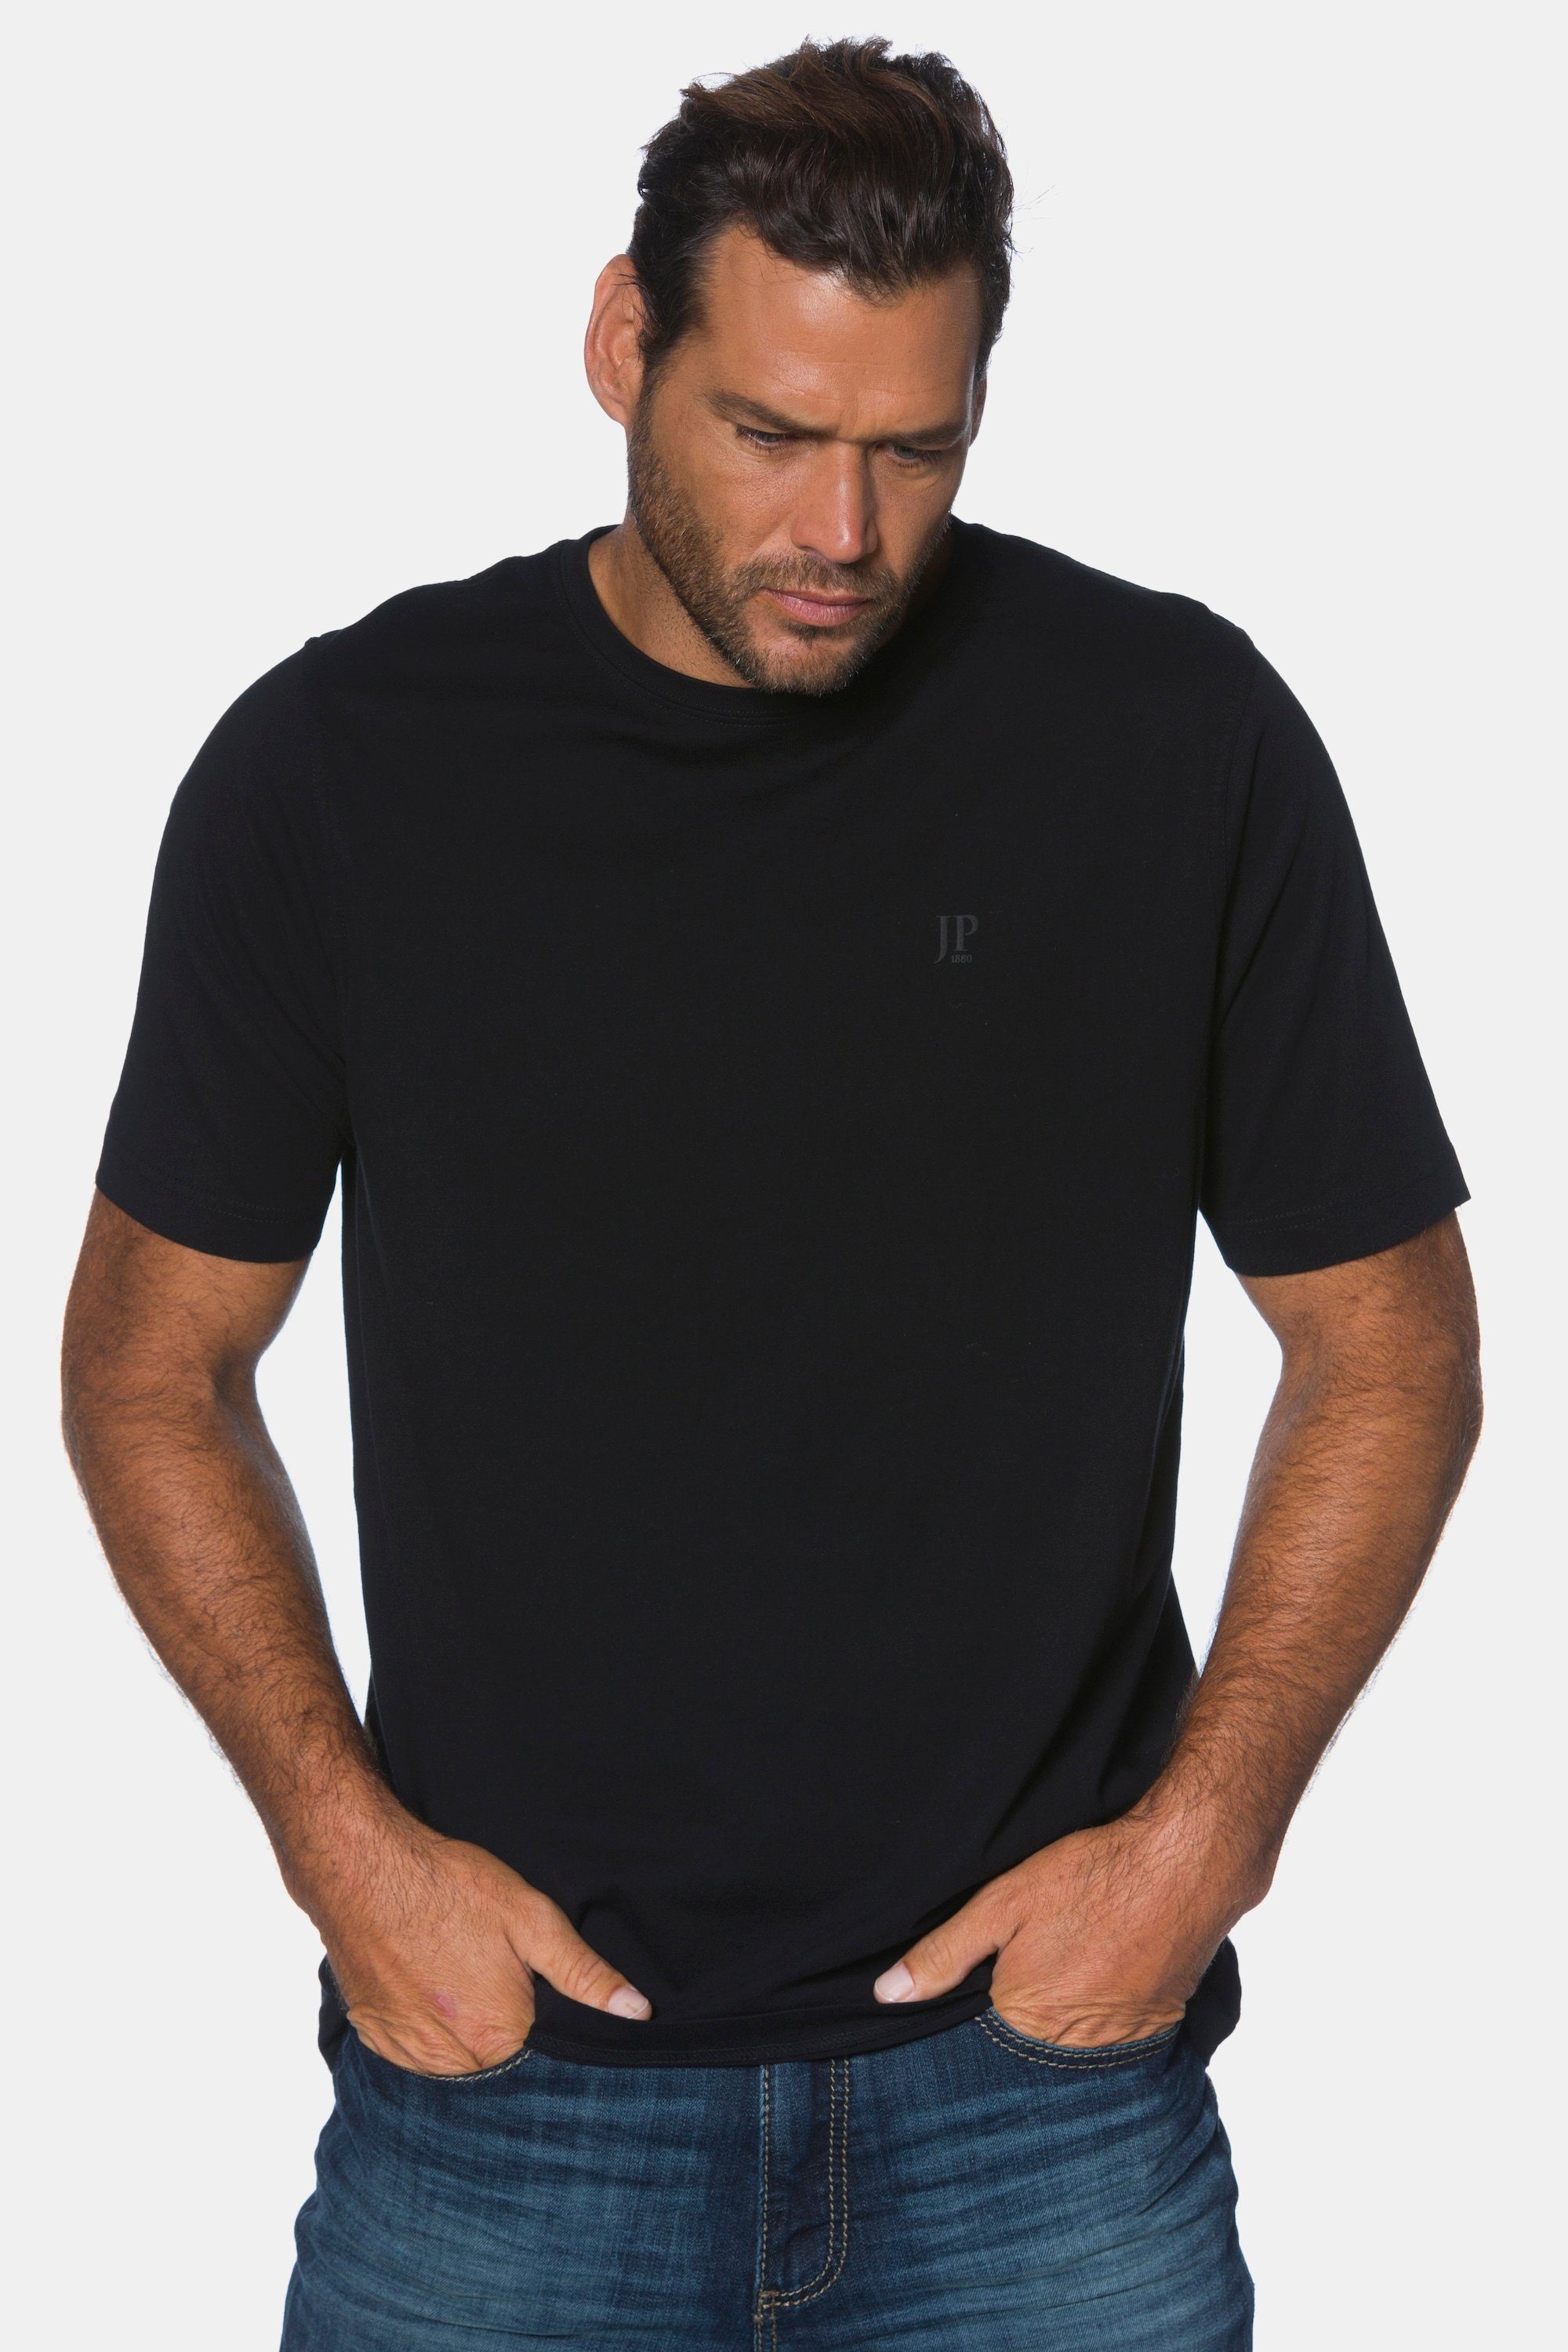 JP1880 T-Shirt T-Shirt Basic Rundhals gekämmte Baumwolle bis 8XL schwarz